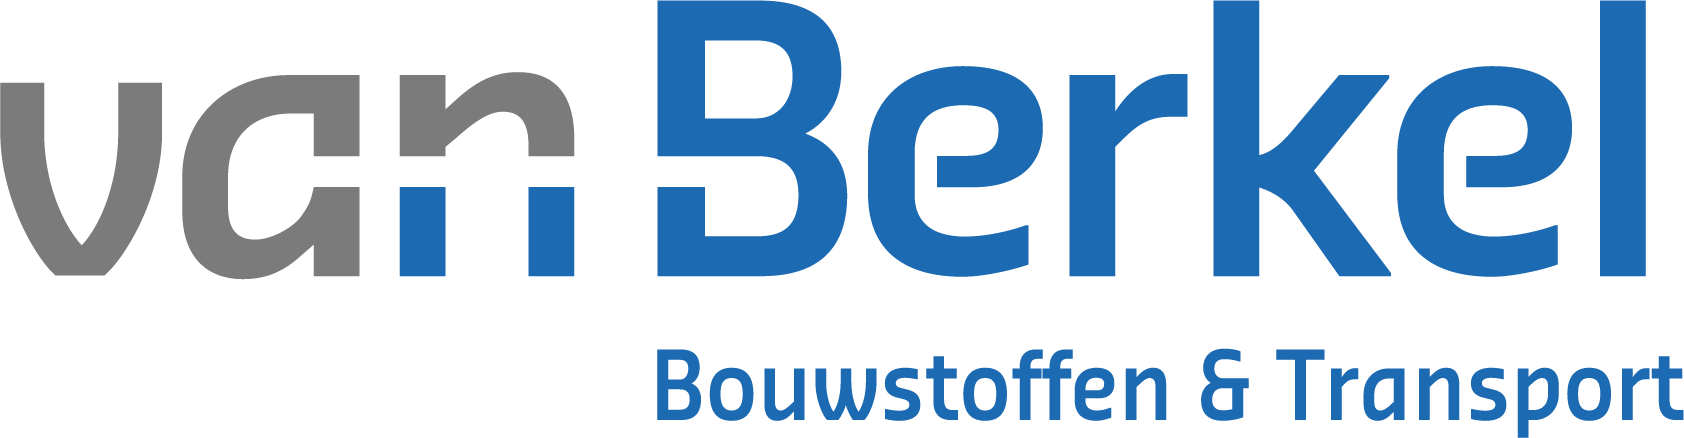 Van Berkel Bouwstoffen & Transport